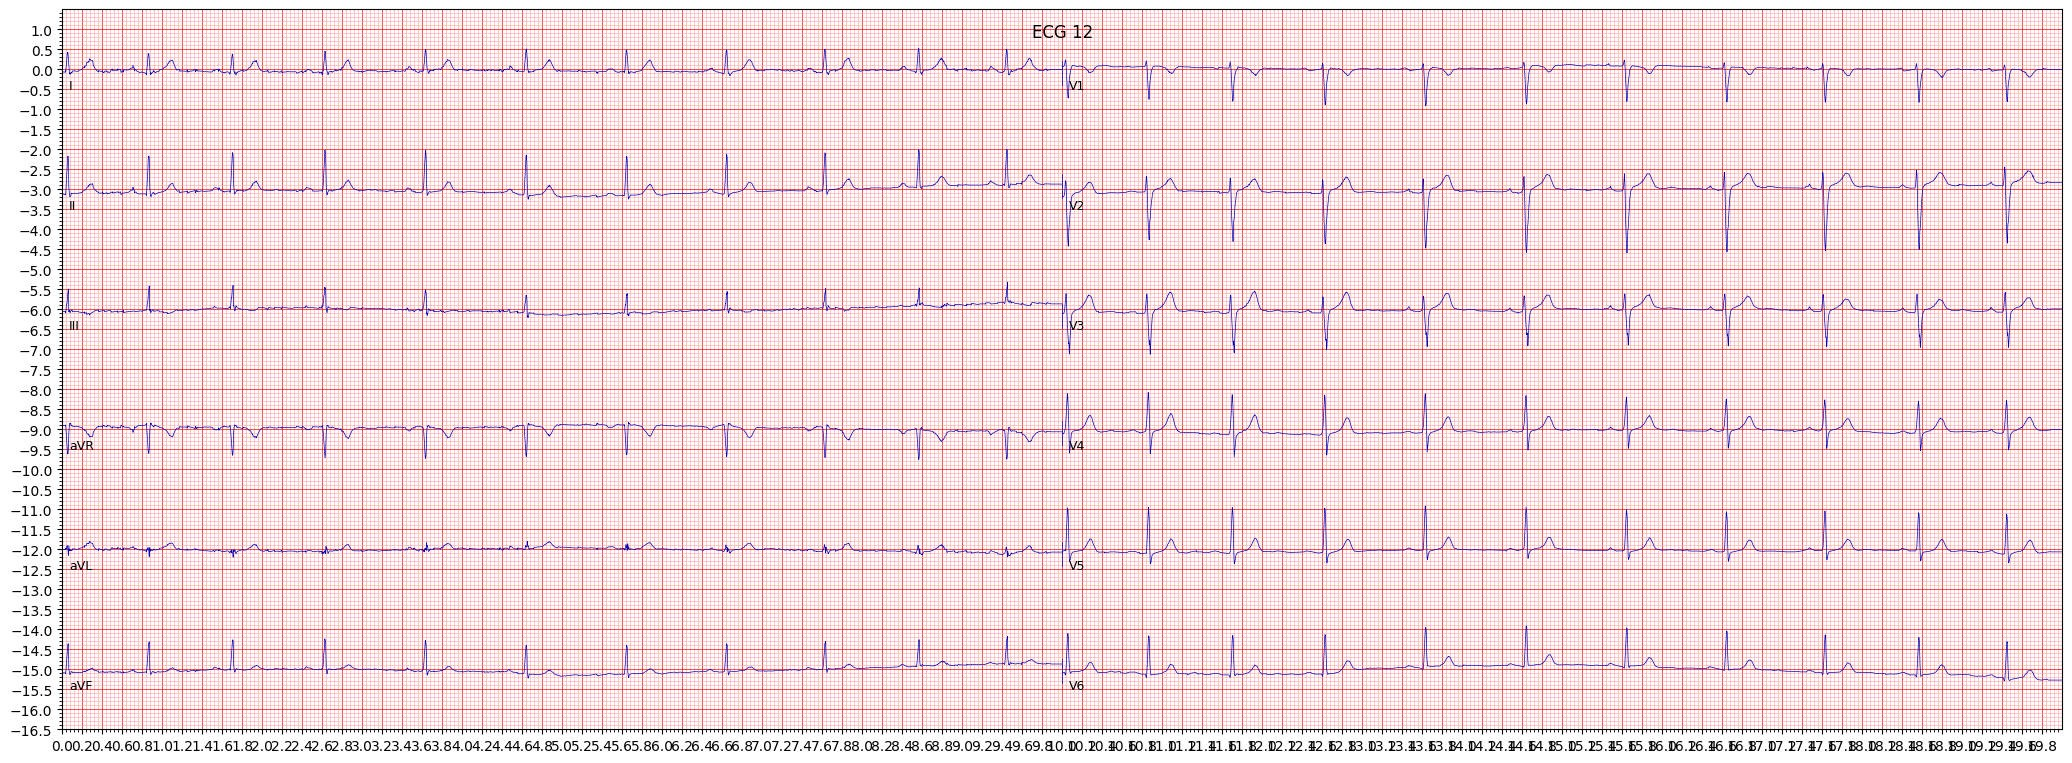 Normal ECG (NORM) example 10